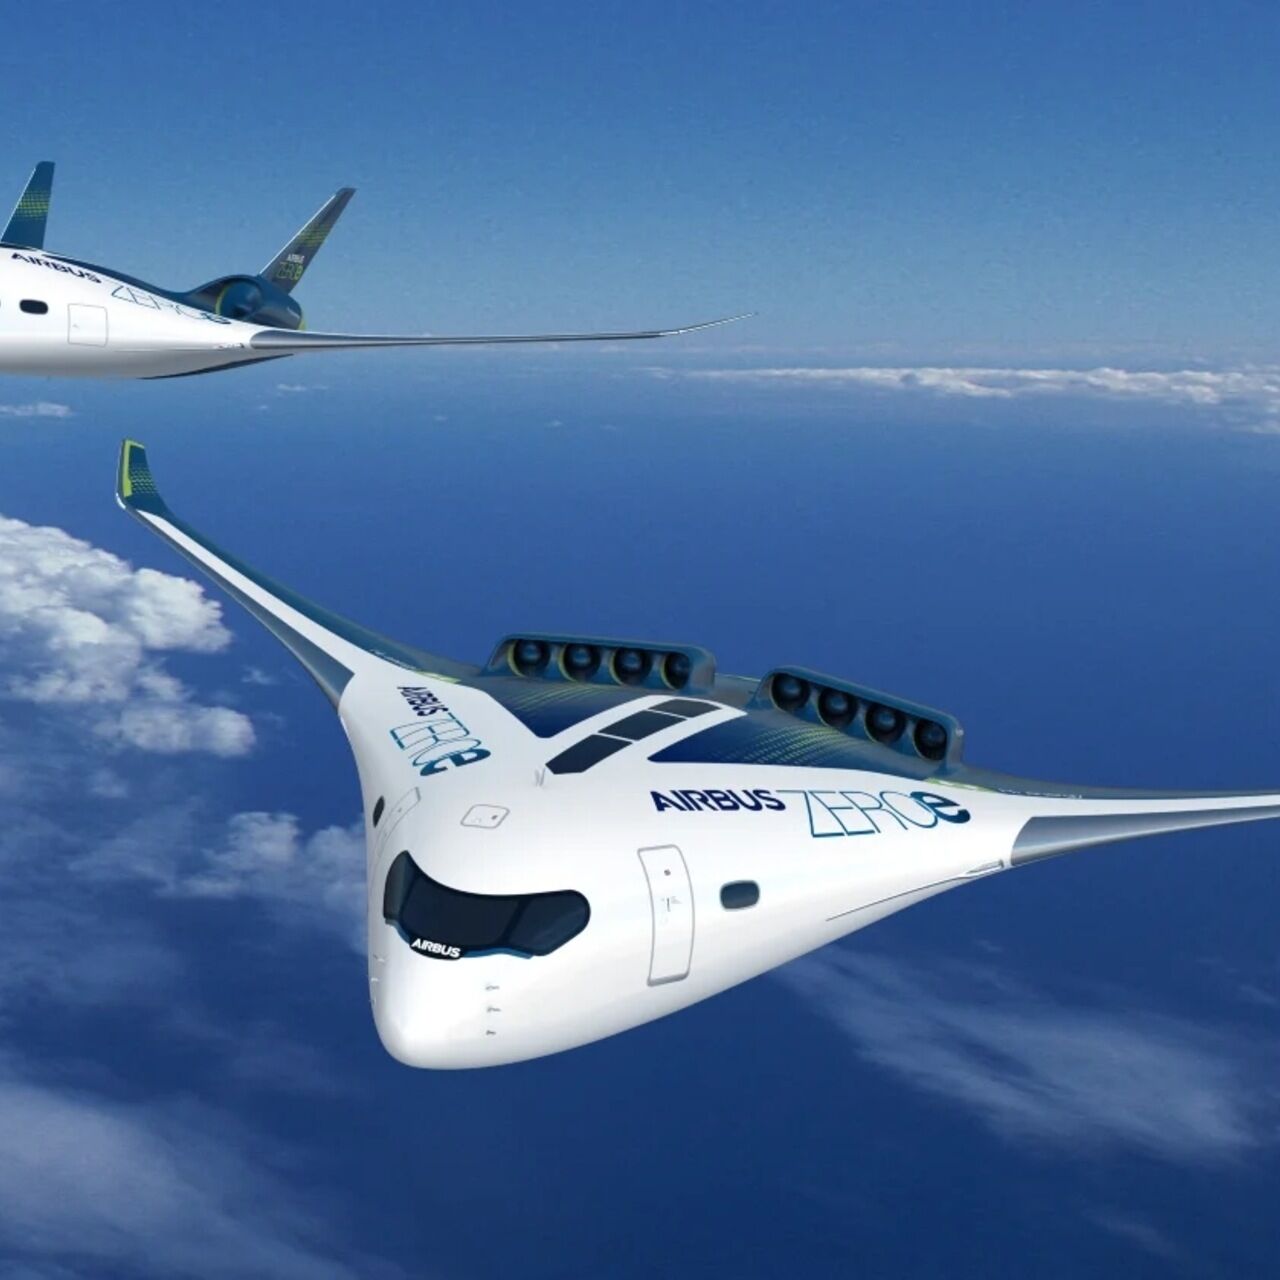 Tiếng ồn: dự án ZEROe của công ty Airbus là một trong những máy bay cánh hỗn hợp được đề xuất trong những năm gần đây và là đối tượng nghiên cứu